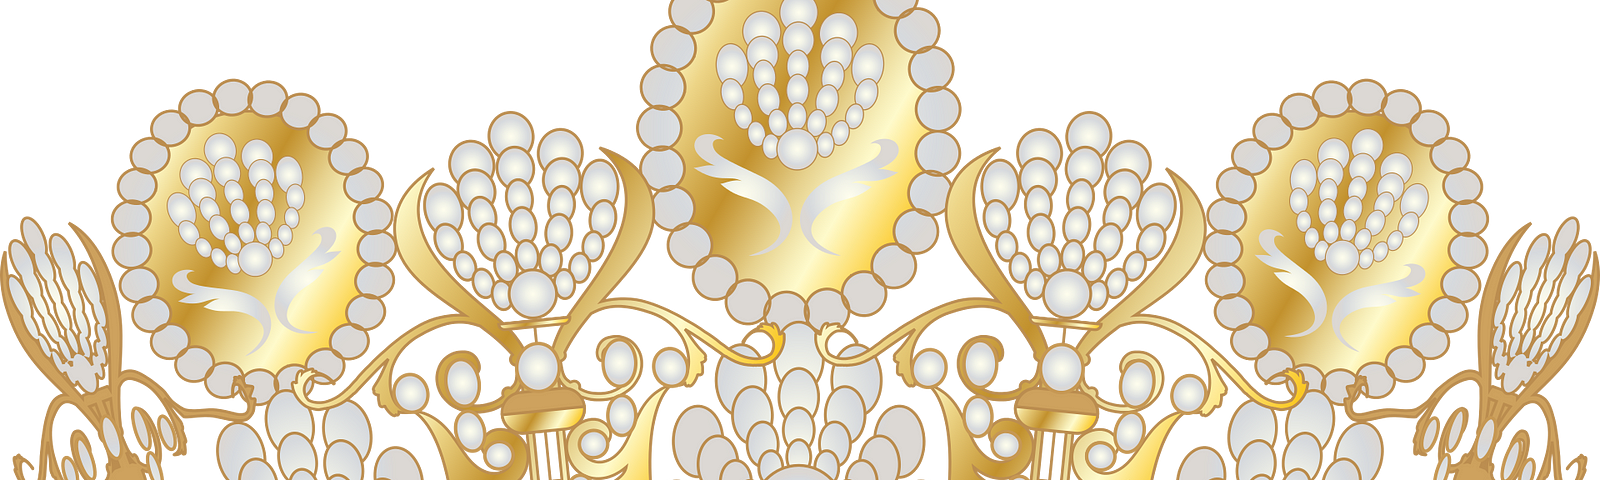 A golden crown